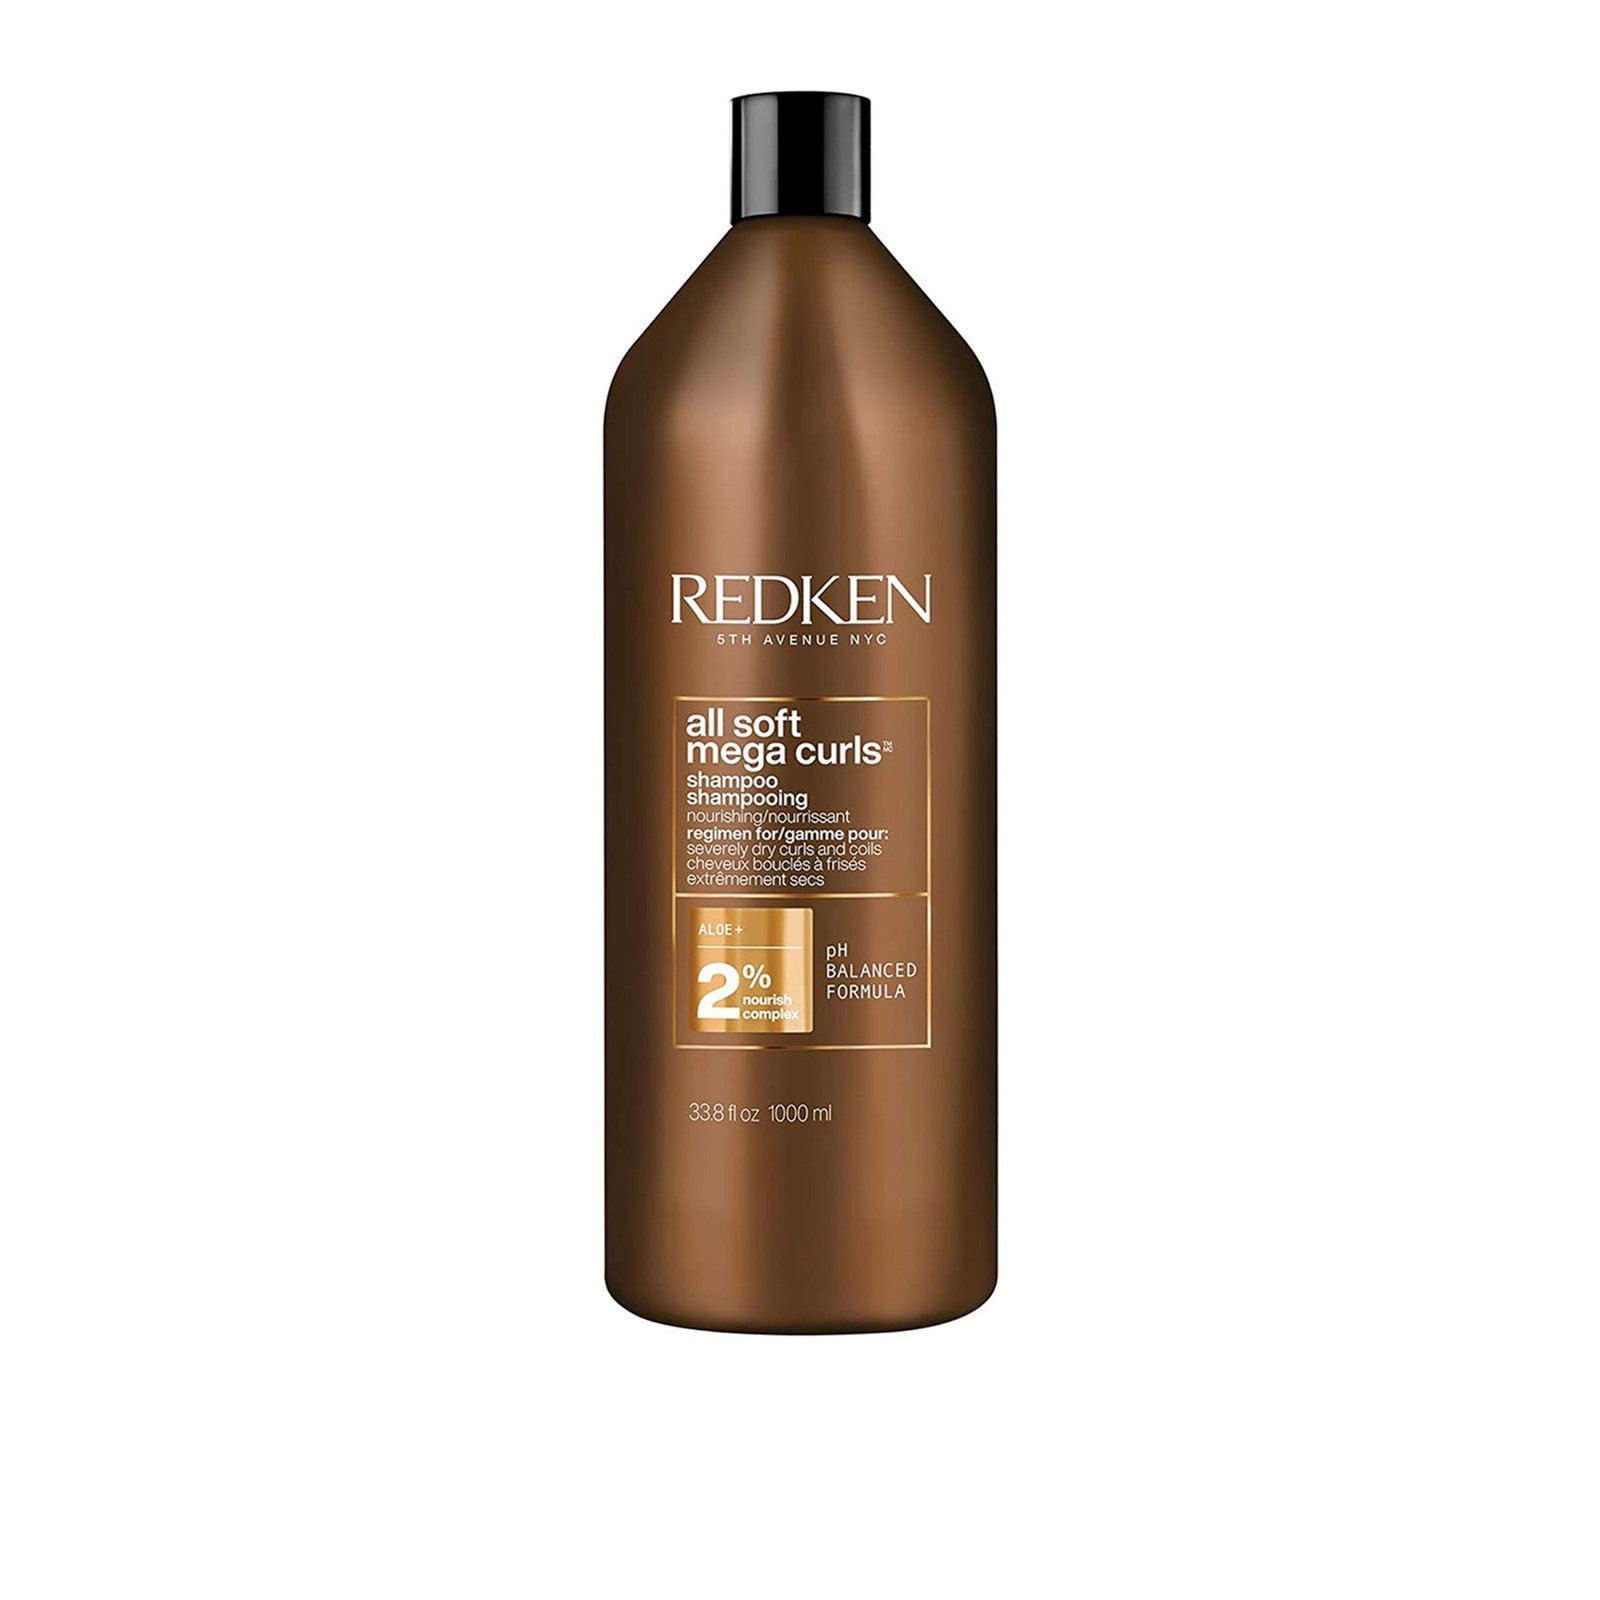 Redken All Soft Mega Curls Shampoo 1L (33.8 fl oz)